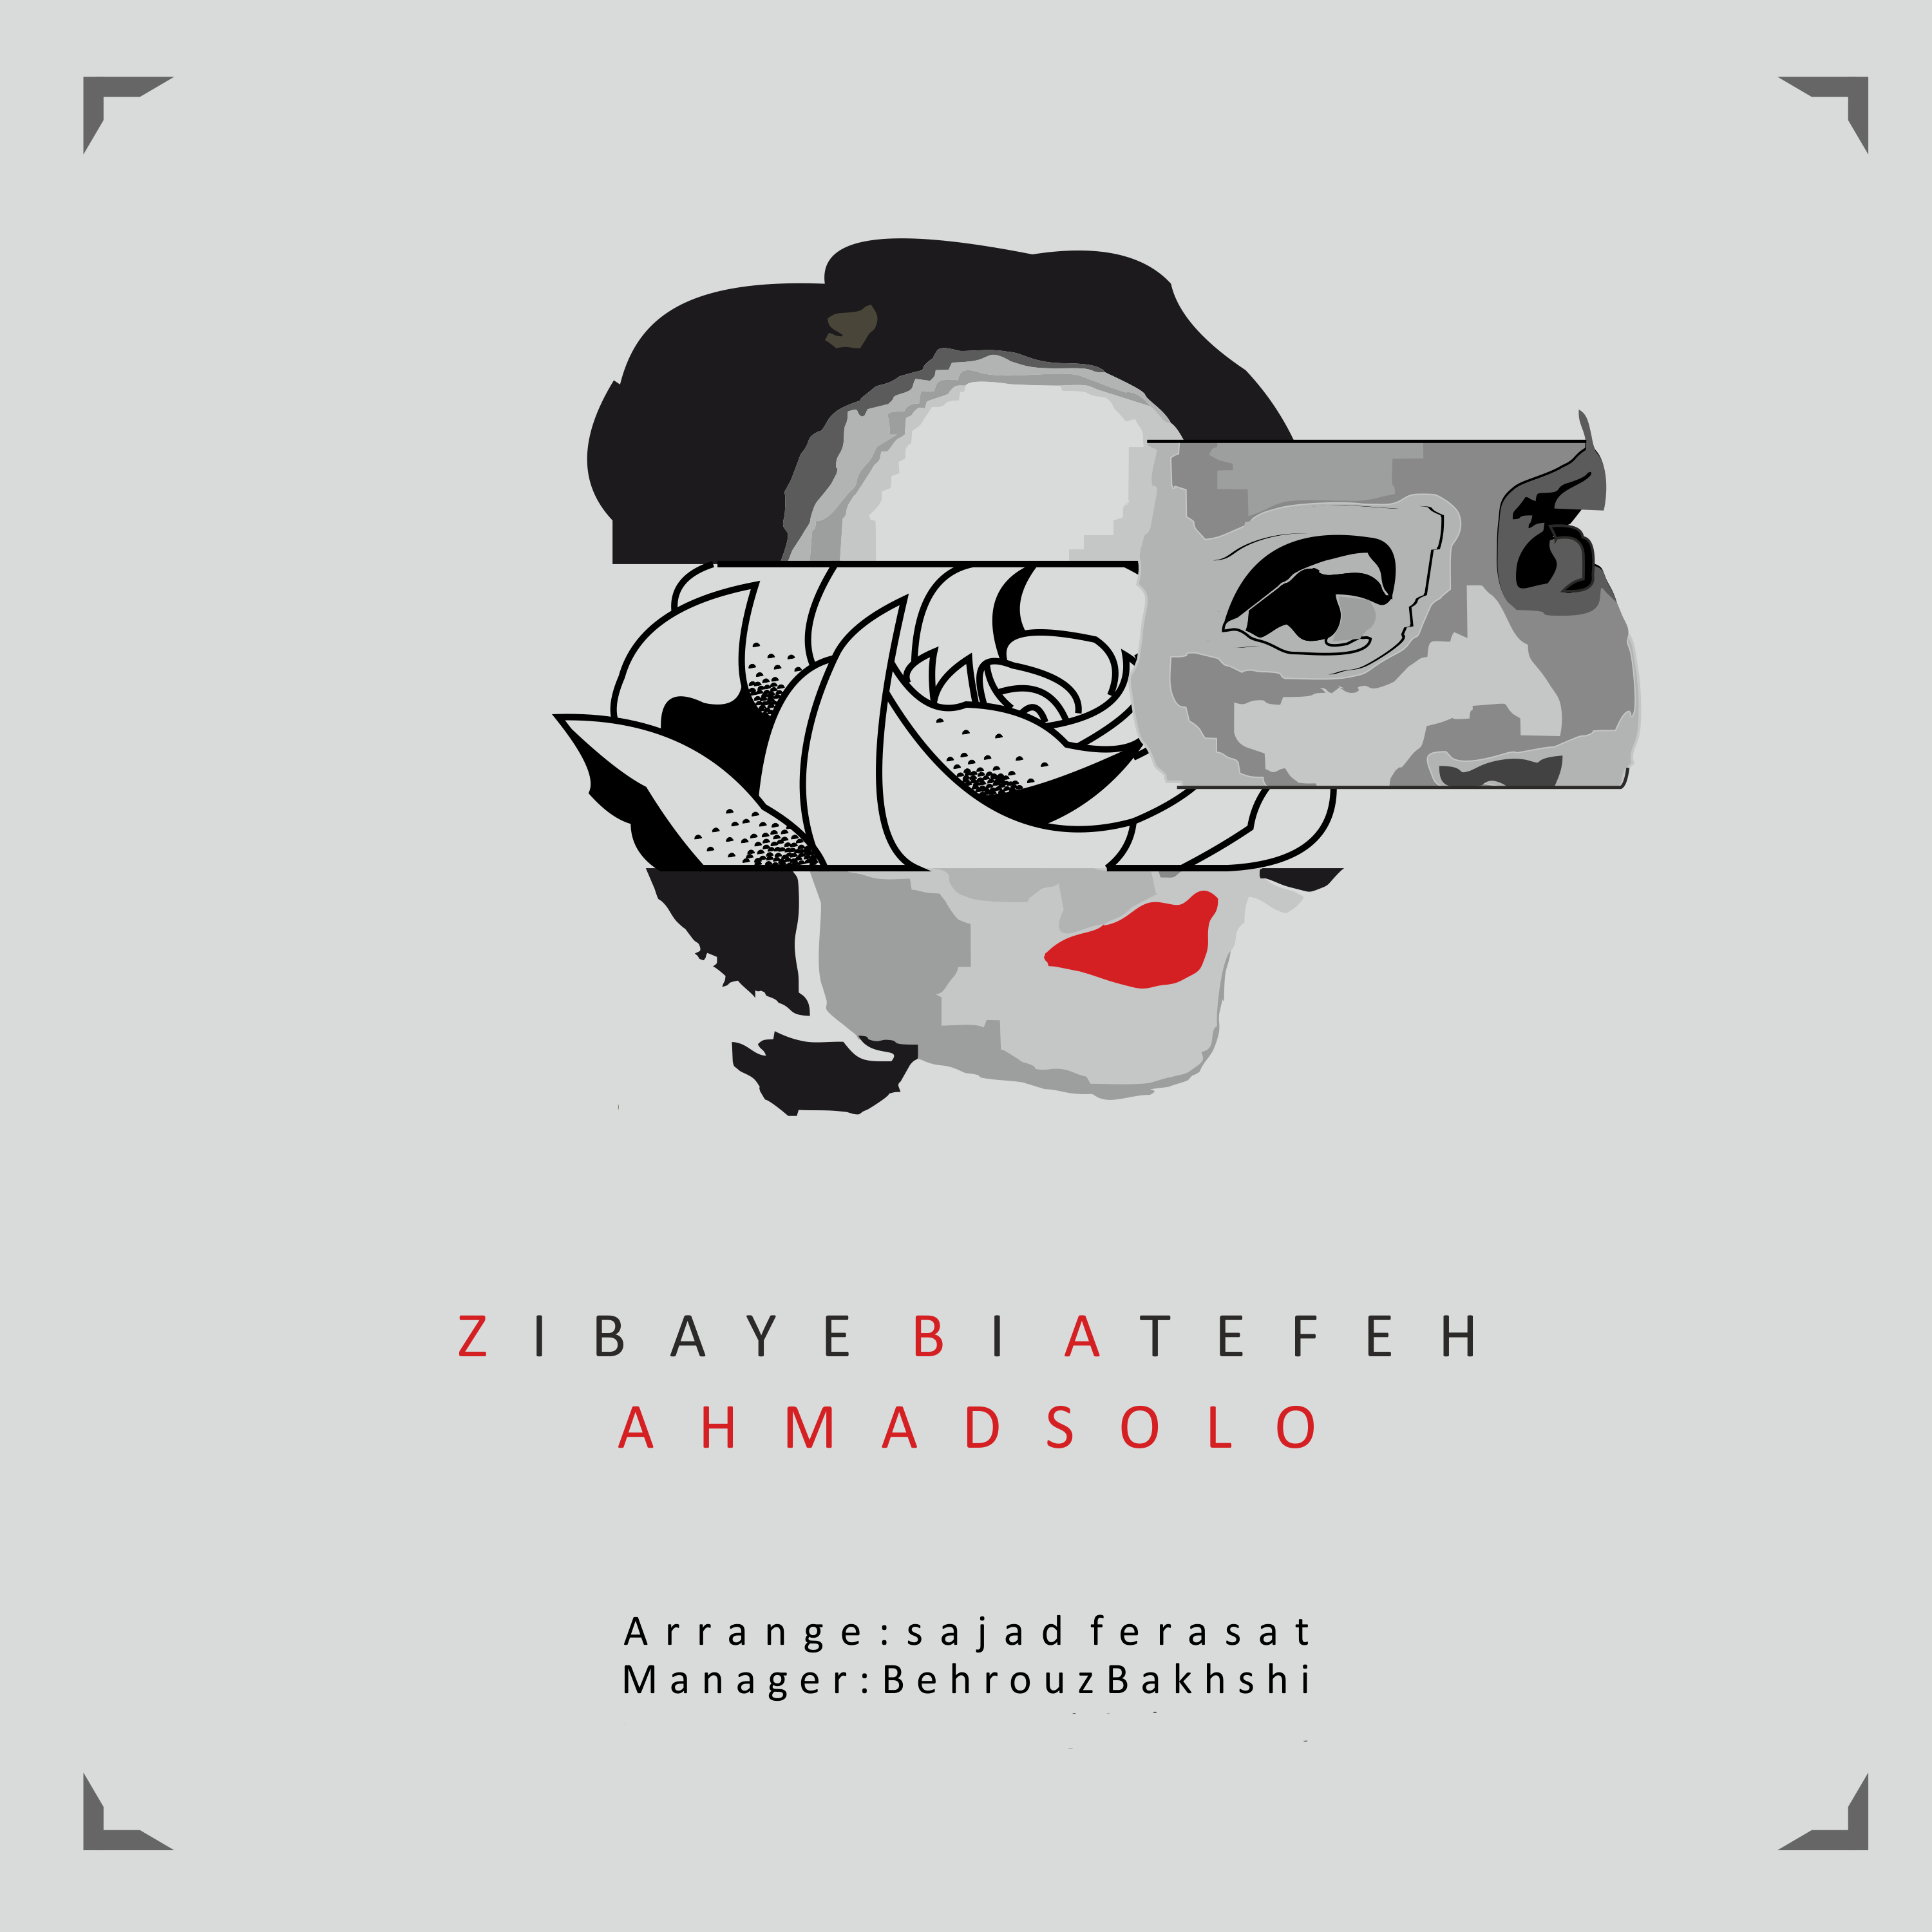  دانلود آهنگ جدید احمد سلو - زیبای بی عاطفه | Download New Music By Ahmad Solo - Zibaye Bi Atefeh